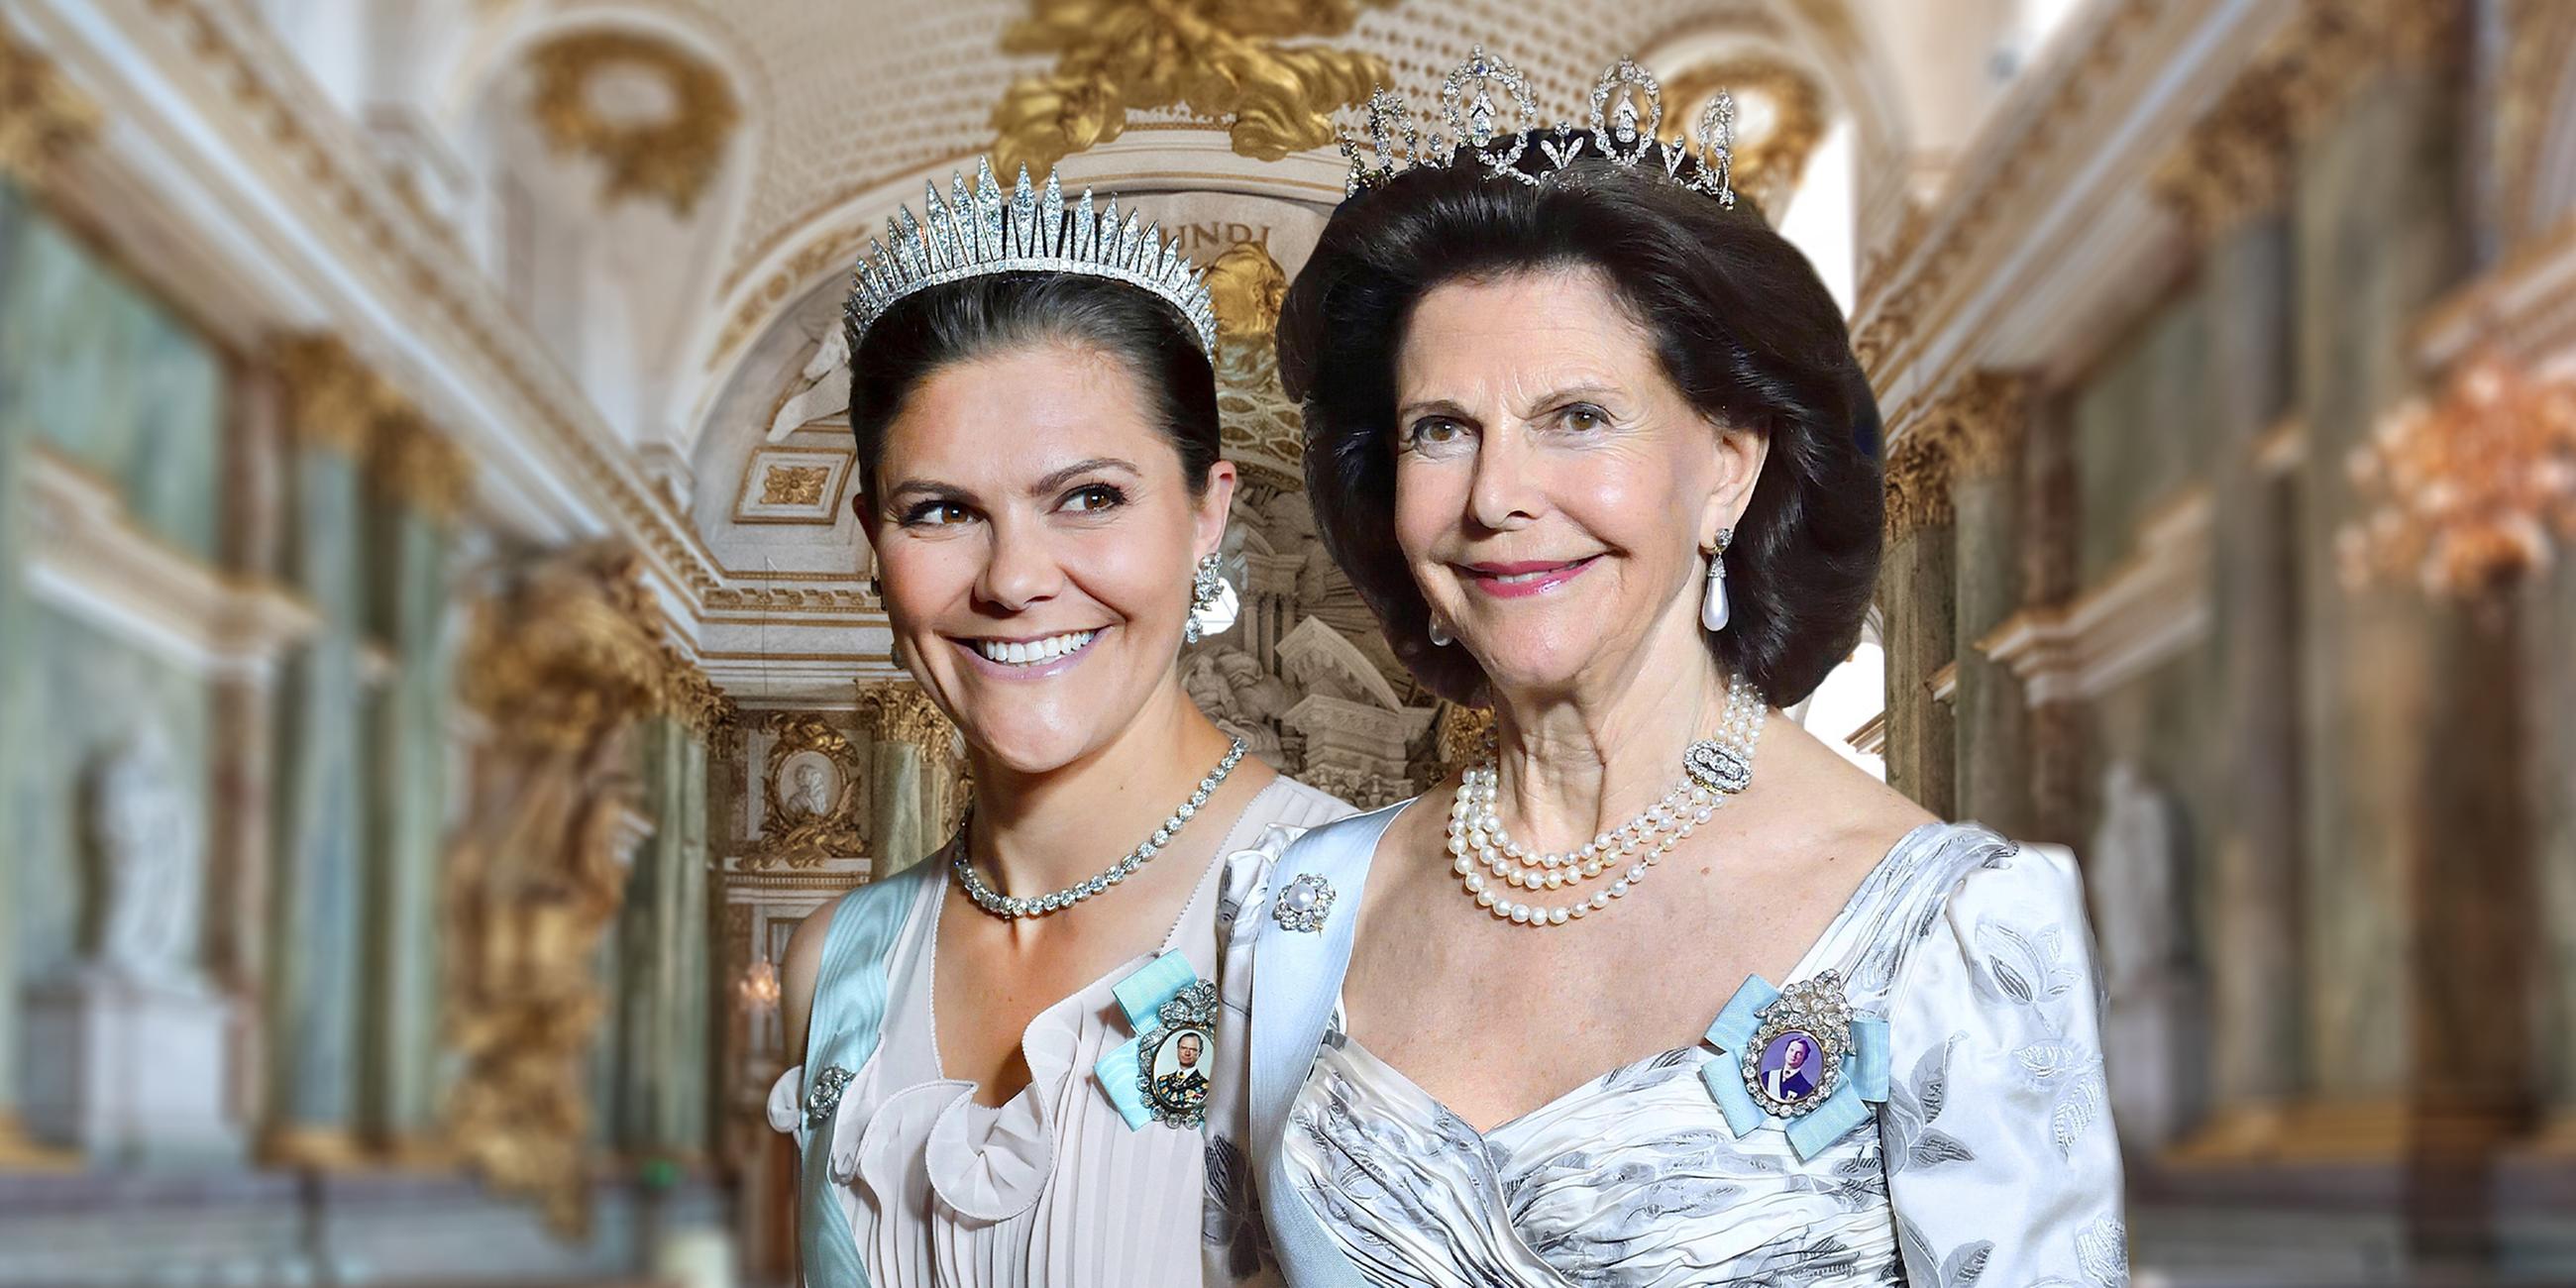 Kronprinzessin Victoria und Königin Silvia von Schweden im offiziellen Festtags-Outfit.